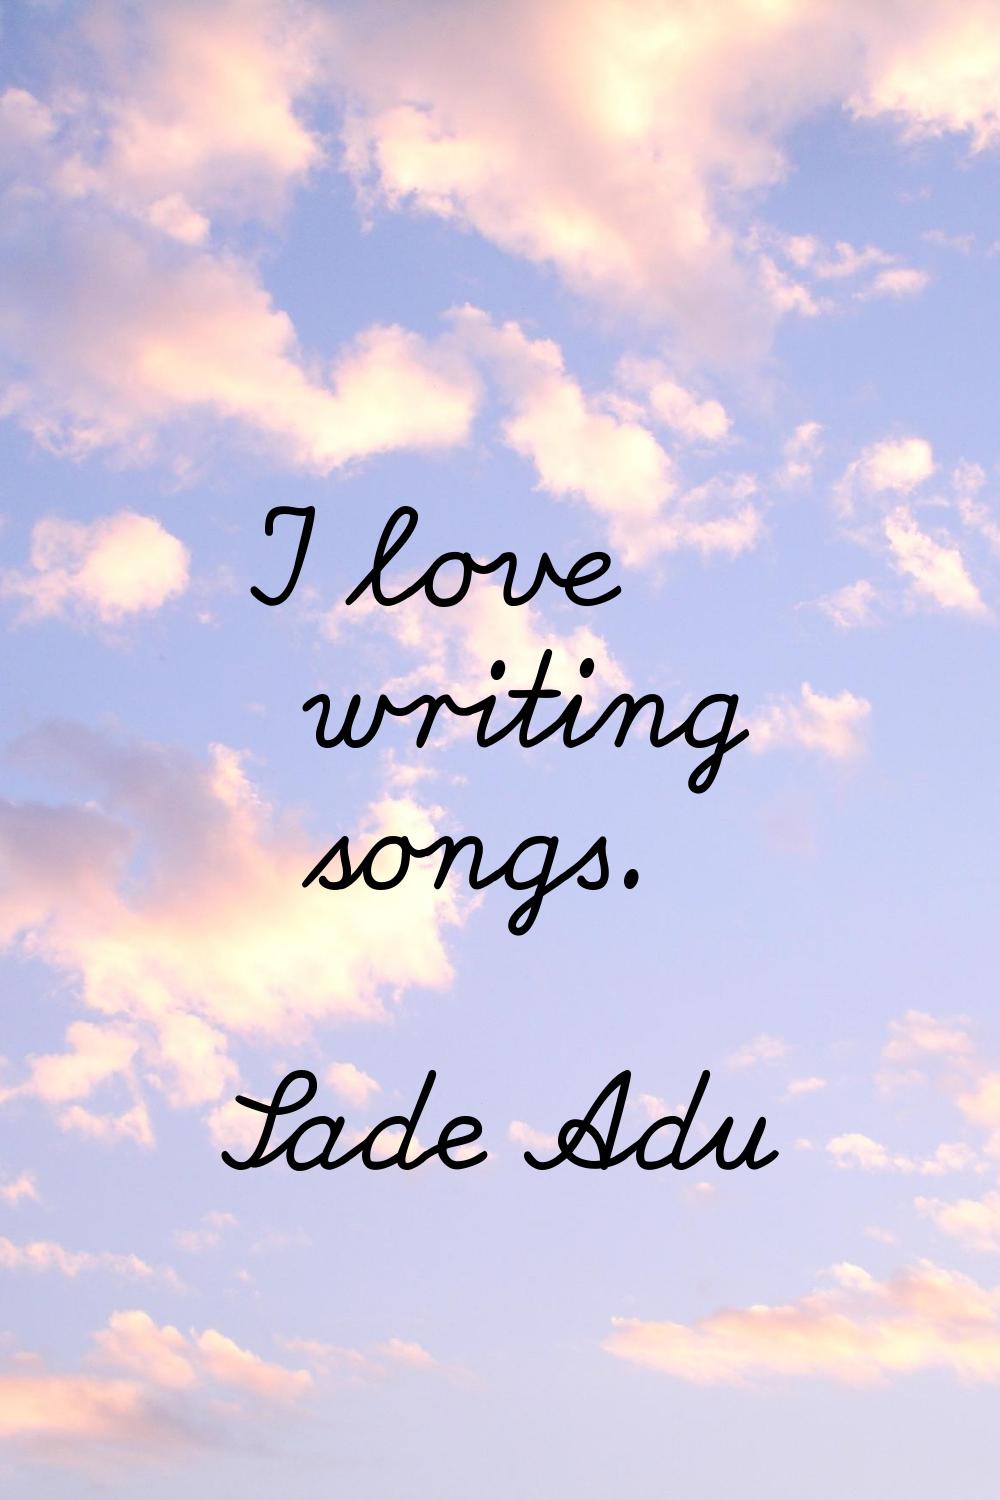 I love writing songs.